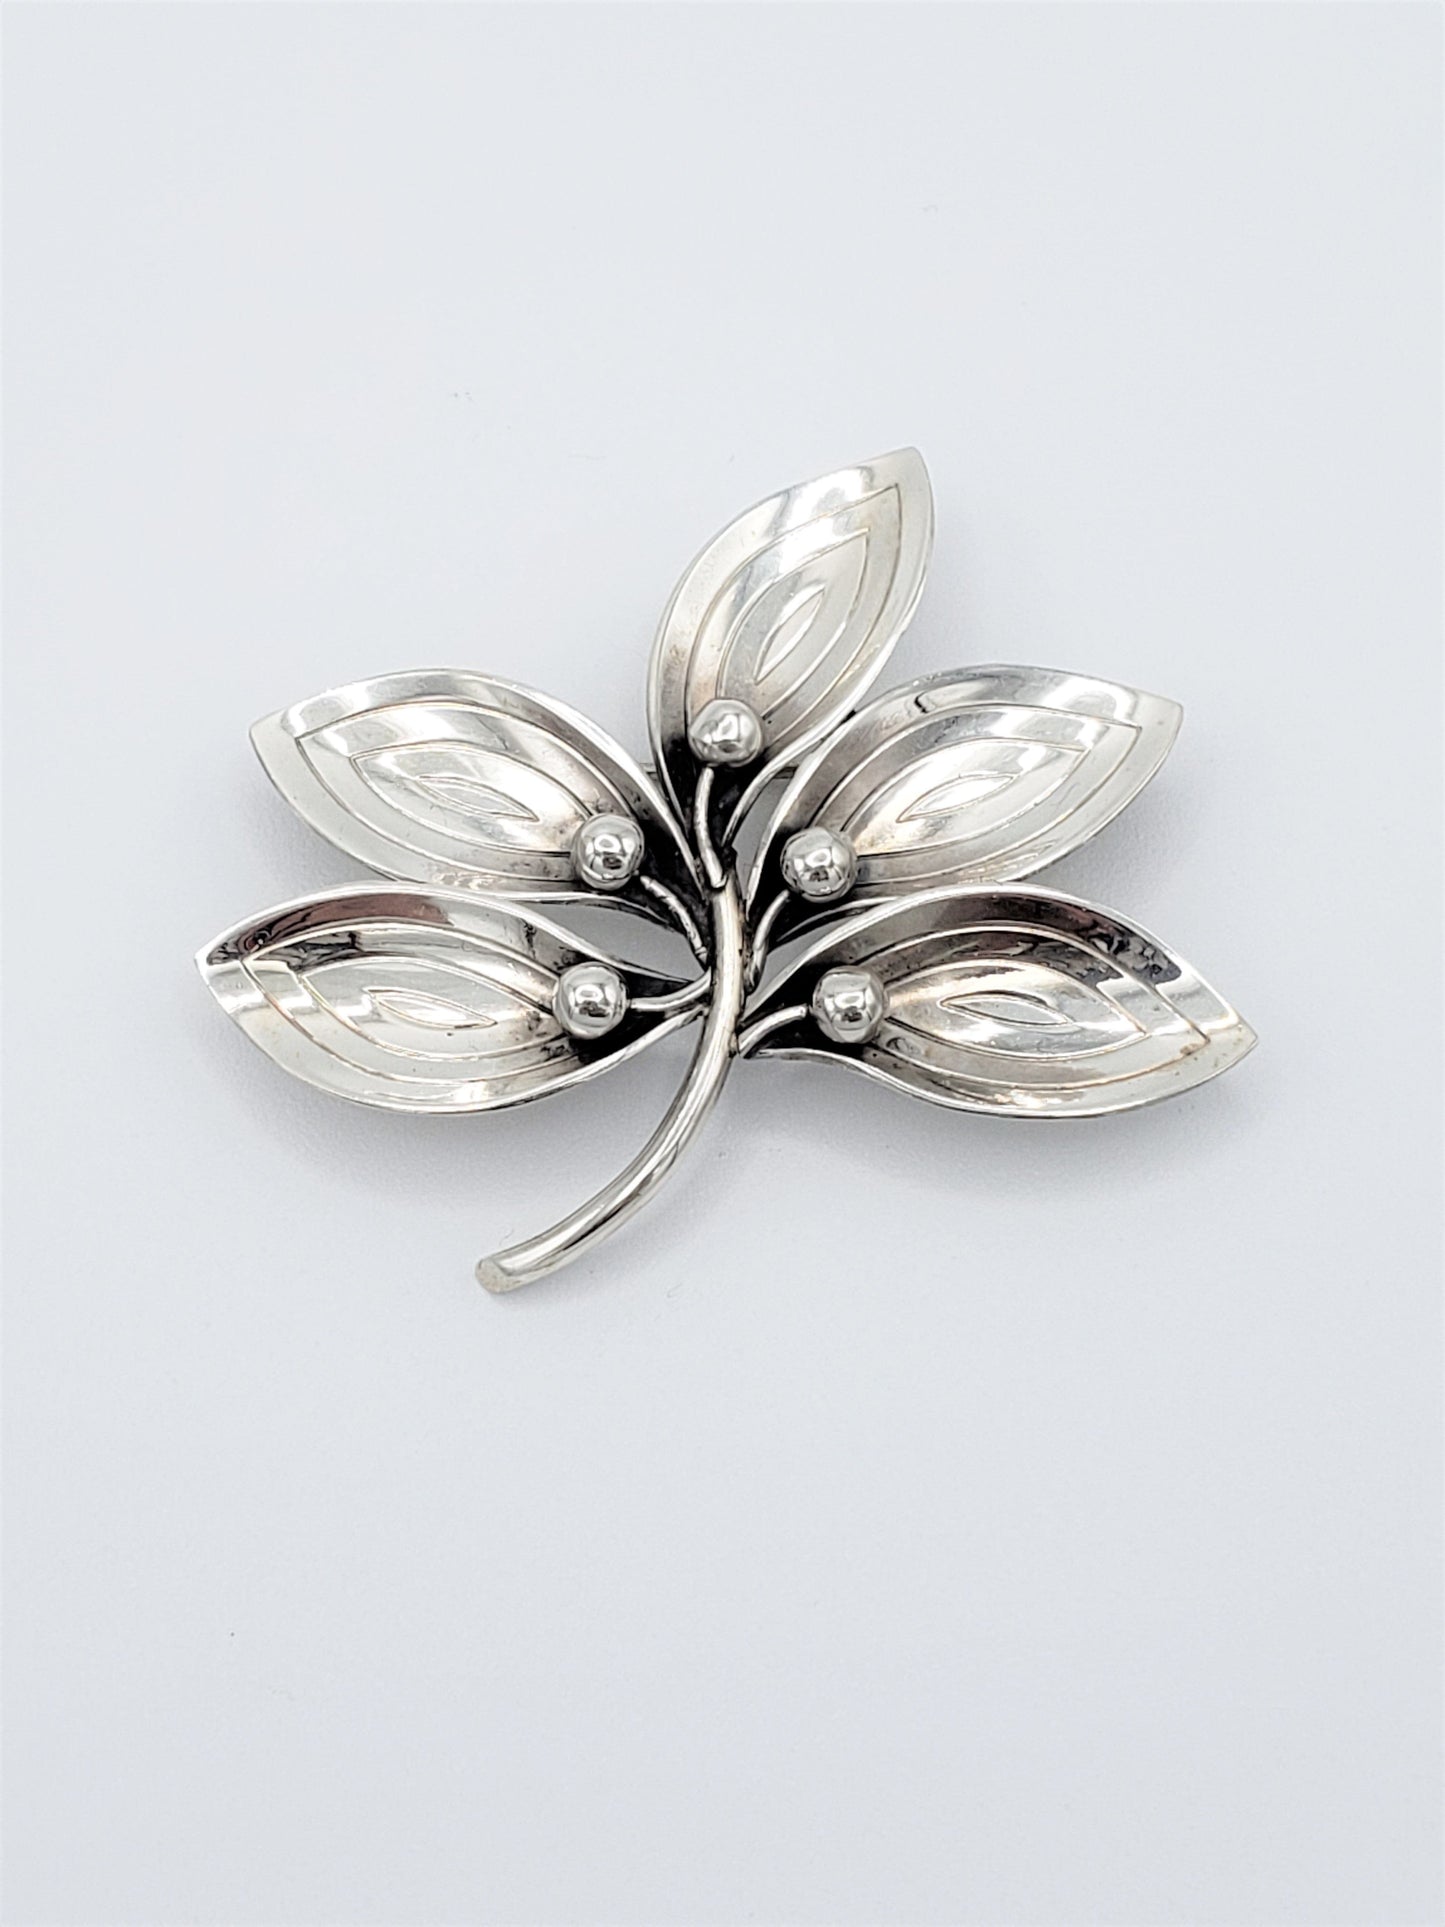 A & K Denmark Jewelry Denmark Designer Aarre Krogh A&K Sterling Silver 5 Leaf Brooch Pendant 1950s